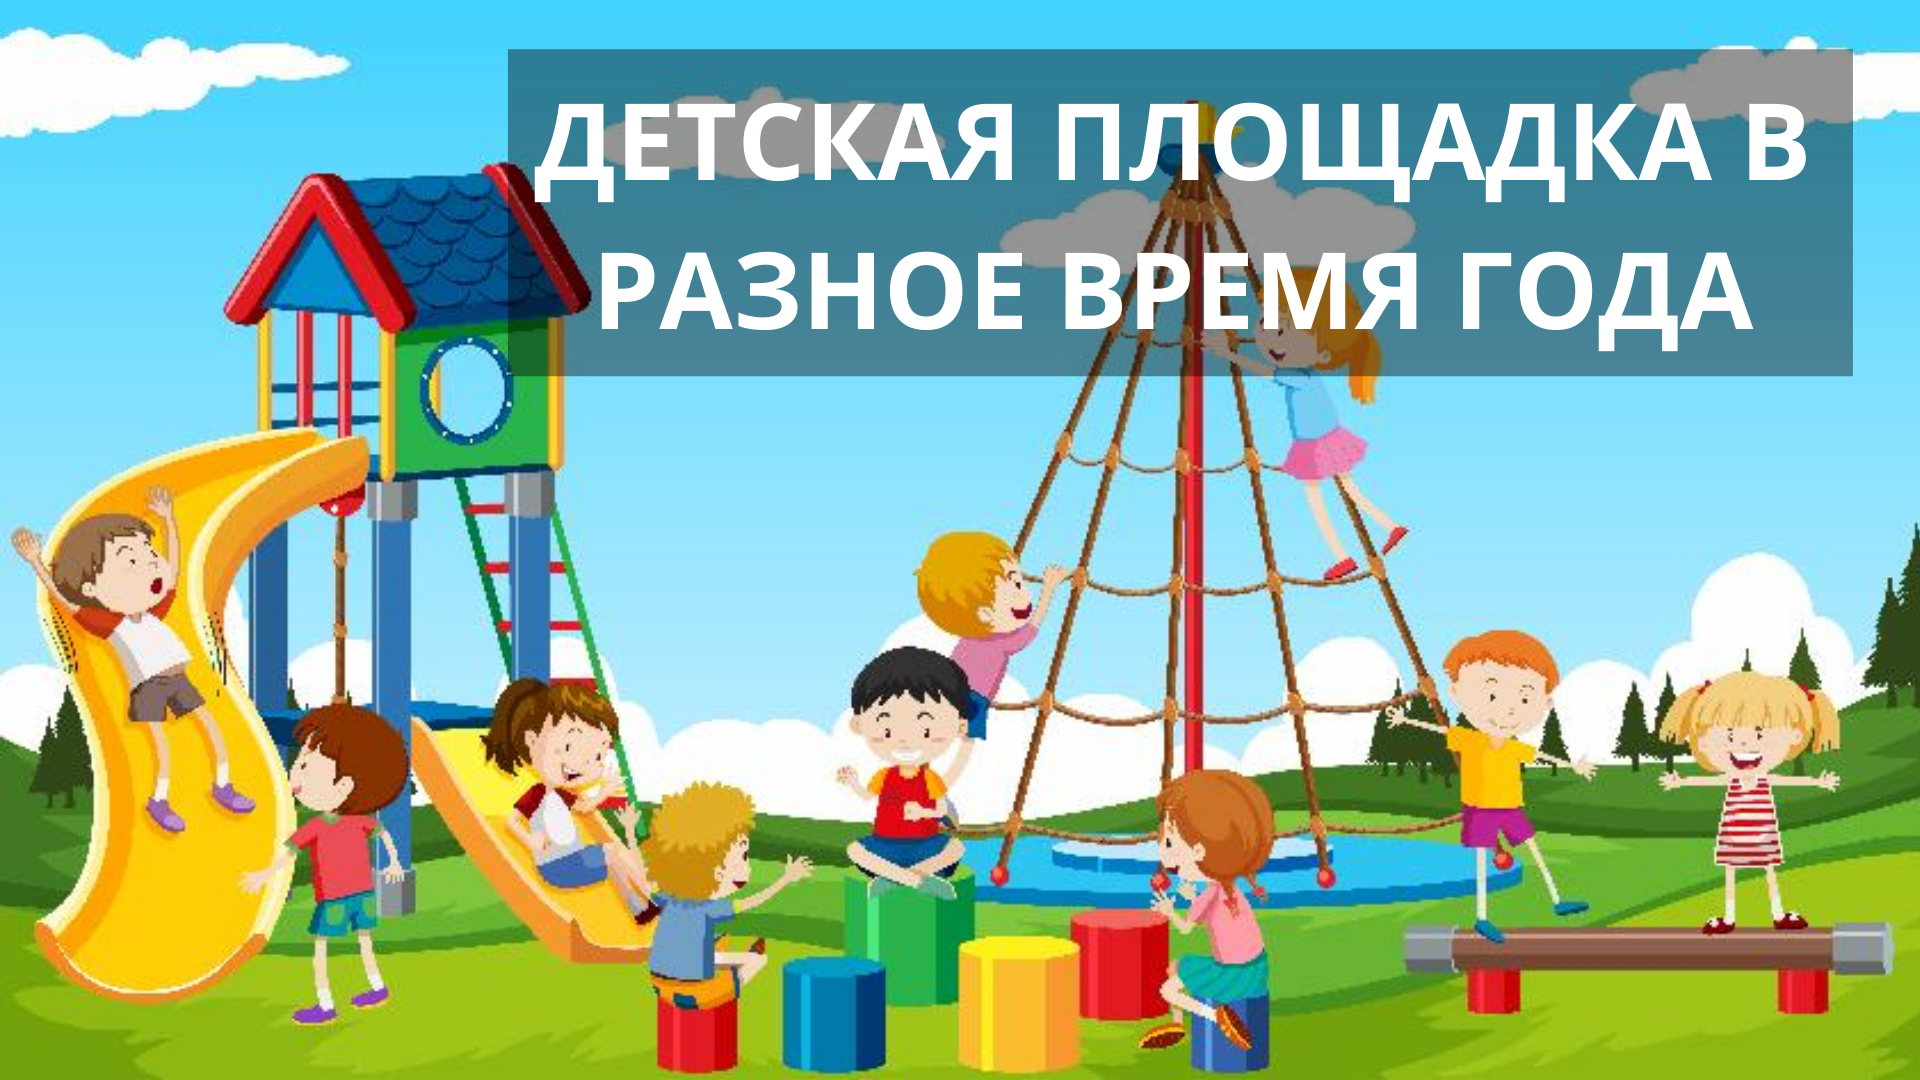 Презентация "Детская площадка в разное время года" | УДОБА